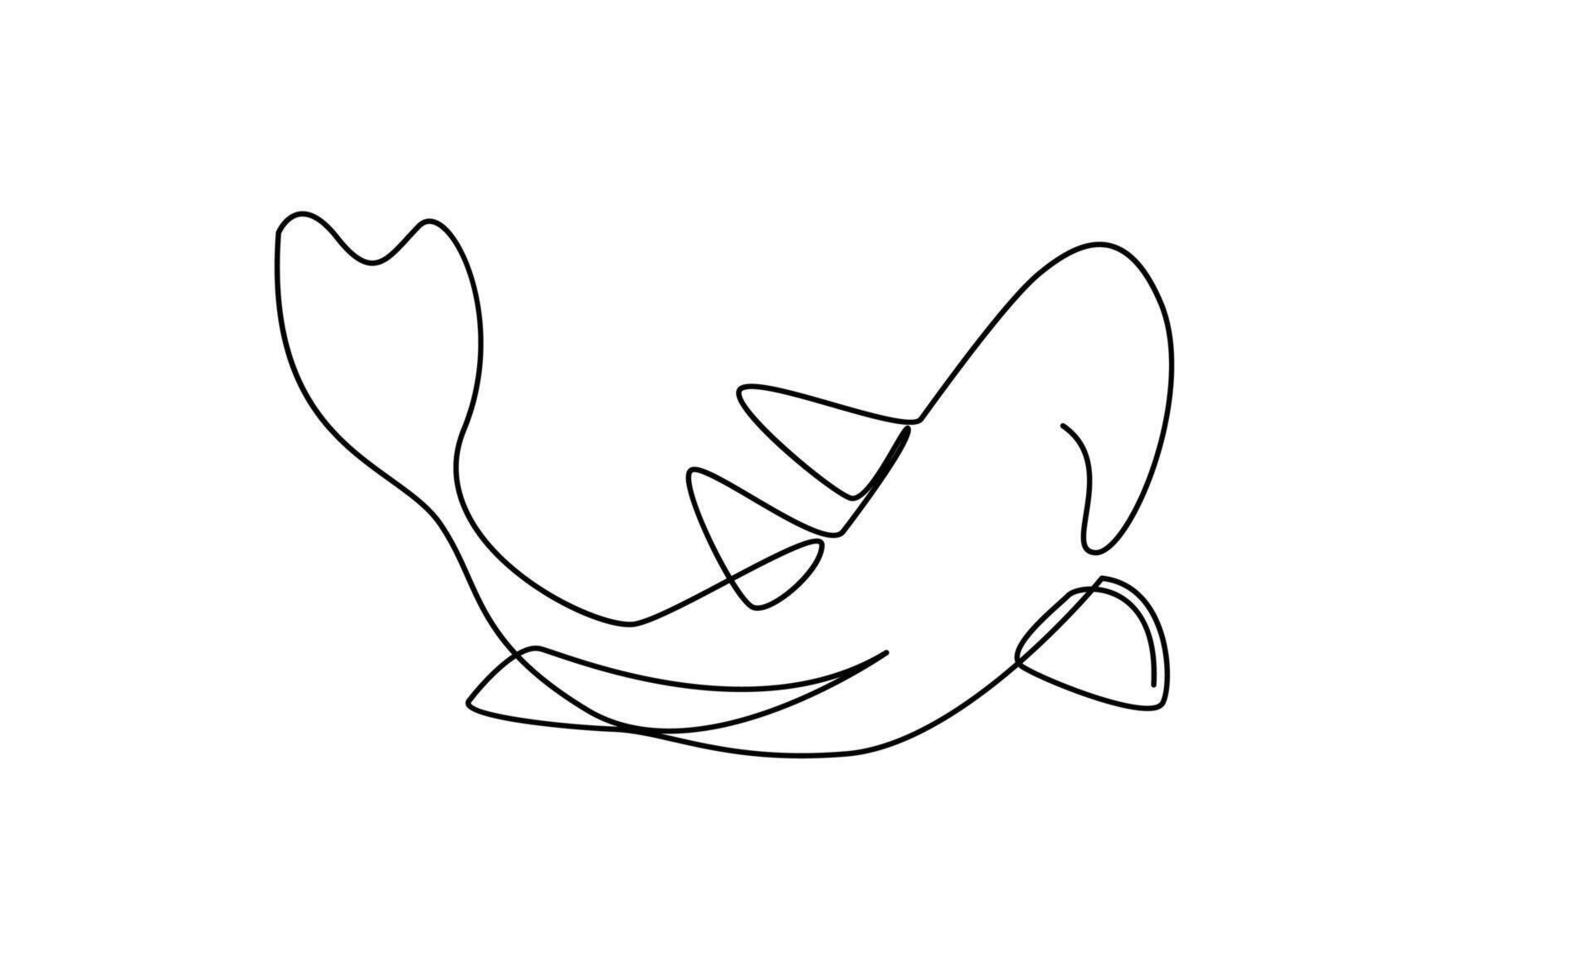 koi karp fisk på de vit bakgrund i en kontinuerlig enda linje teckning stil vektor